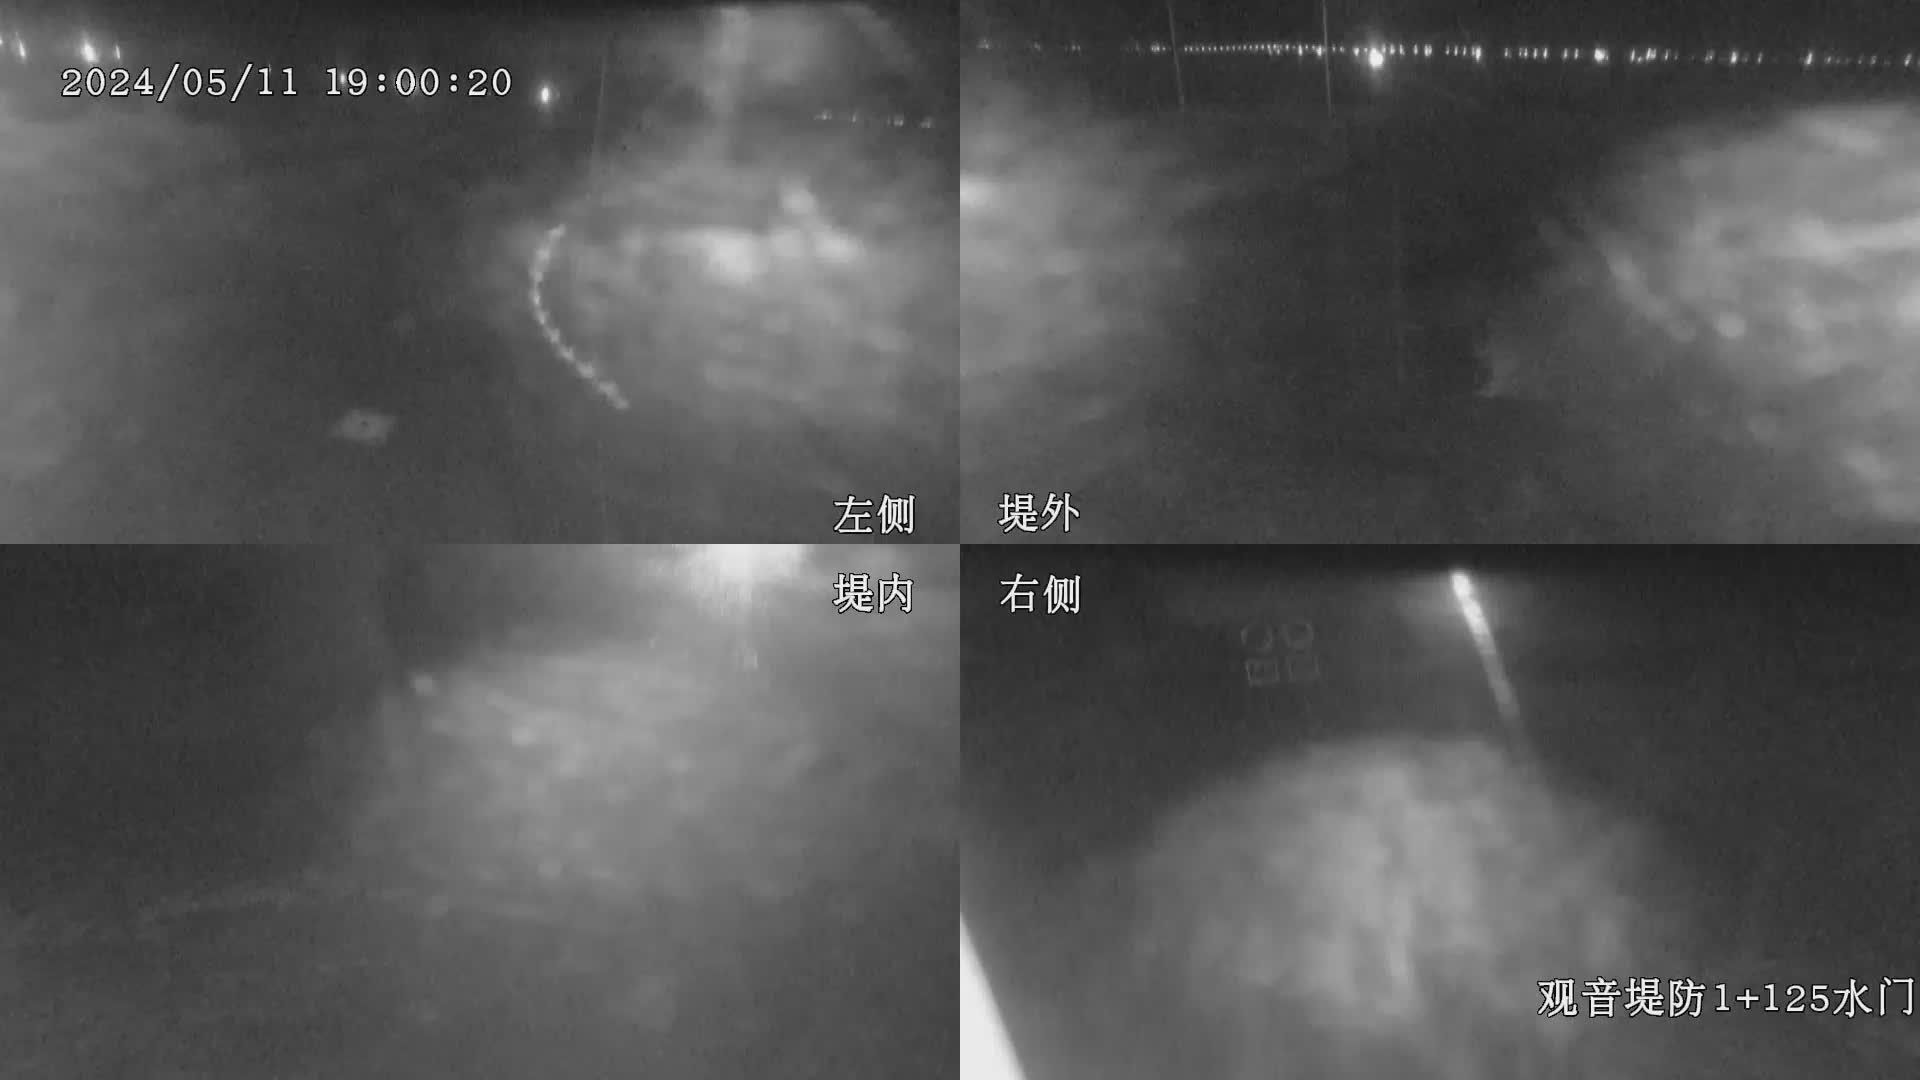 水利署水資源  九河局 觀音堤防1+125水門 全景攝影機 距離7.7公里 氣溫20.2度